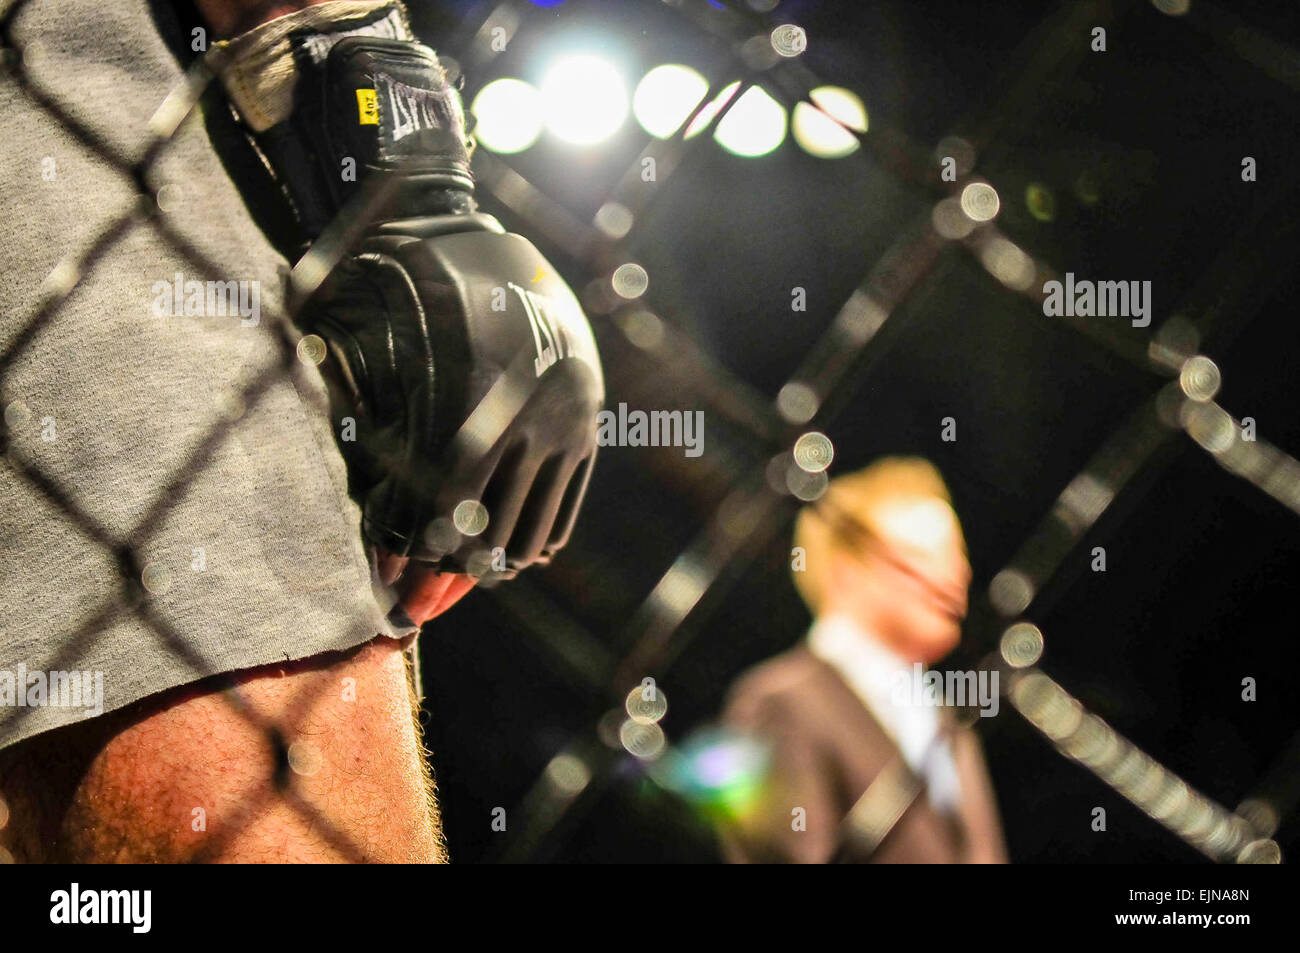 Ein MMA-Käfig-Kämpfer trägt Handschuhe Everlast und wartet auf seinen Kampf beginnen Stockfoto